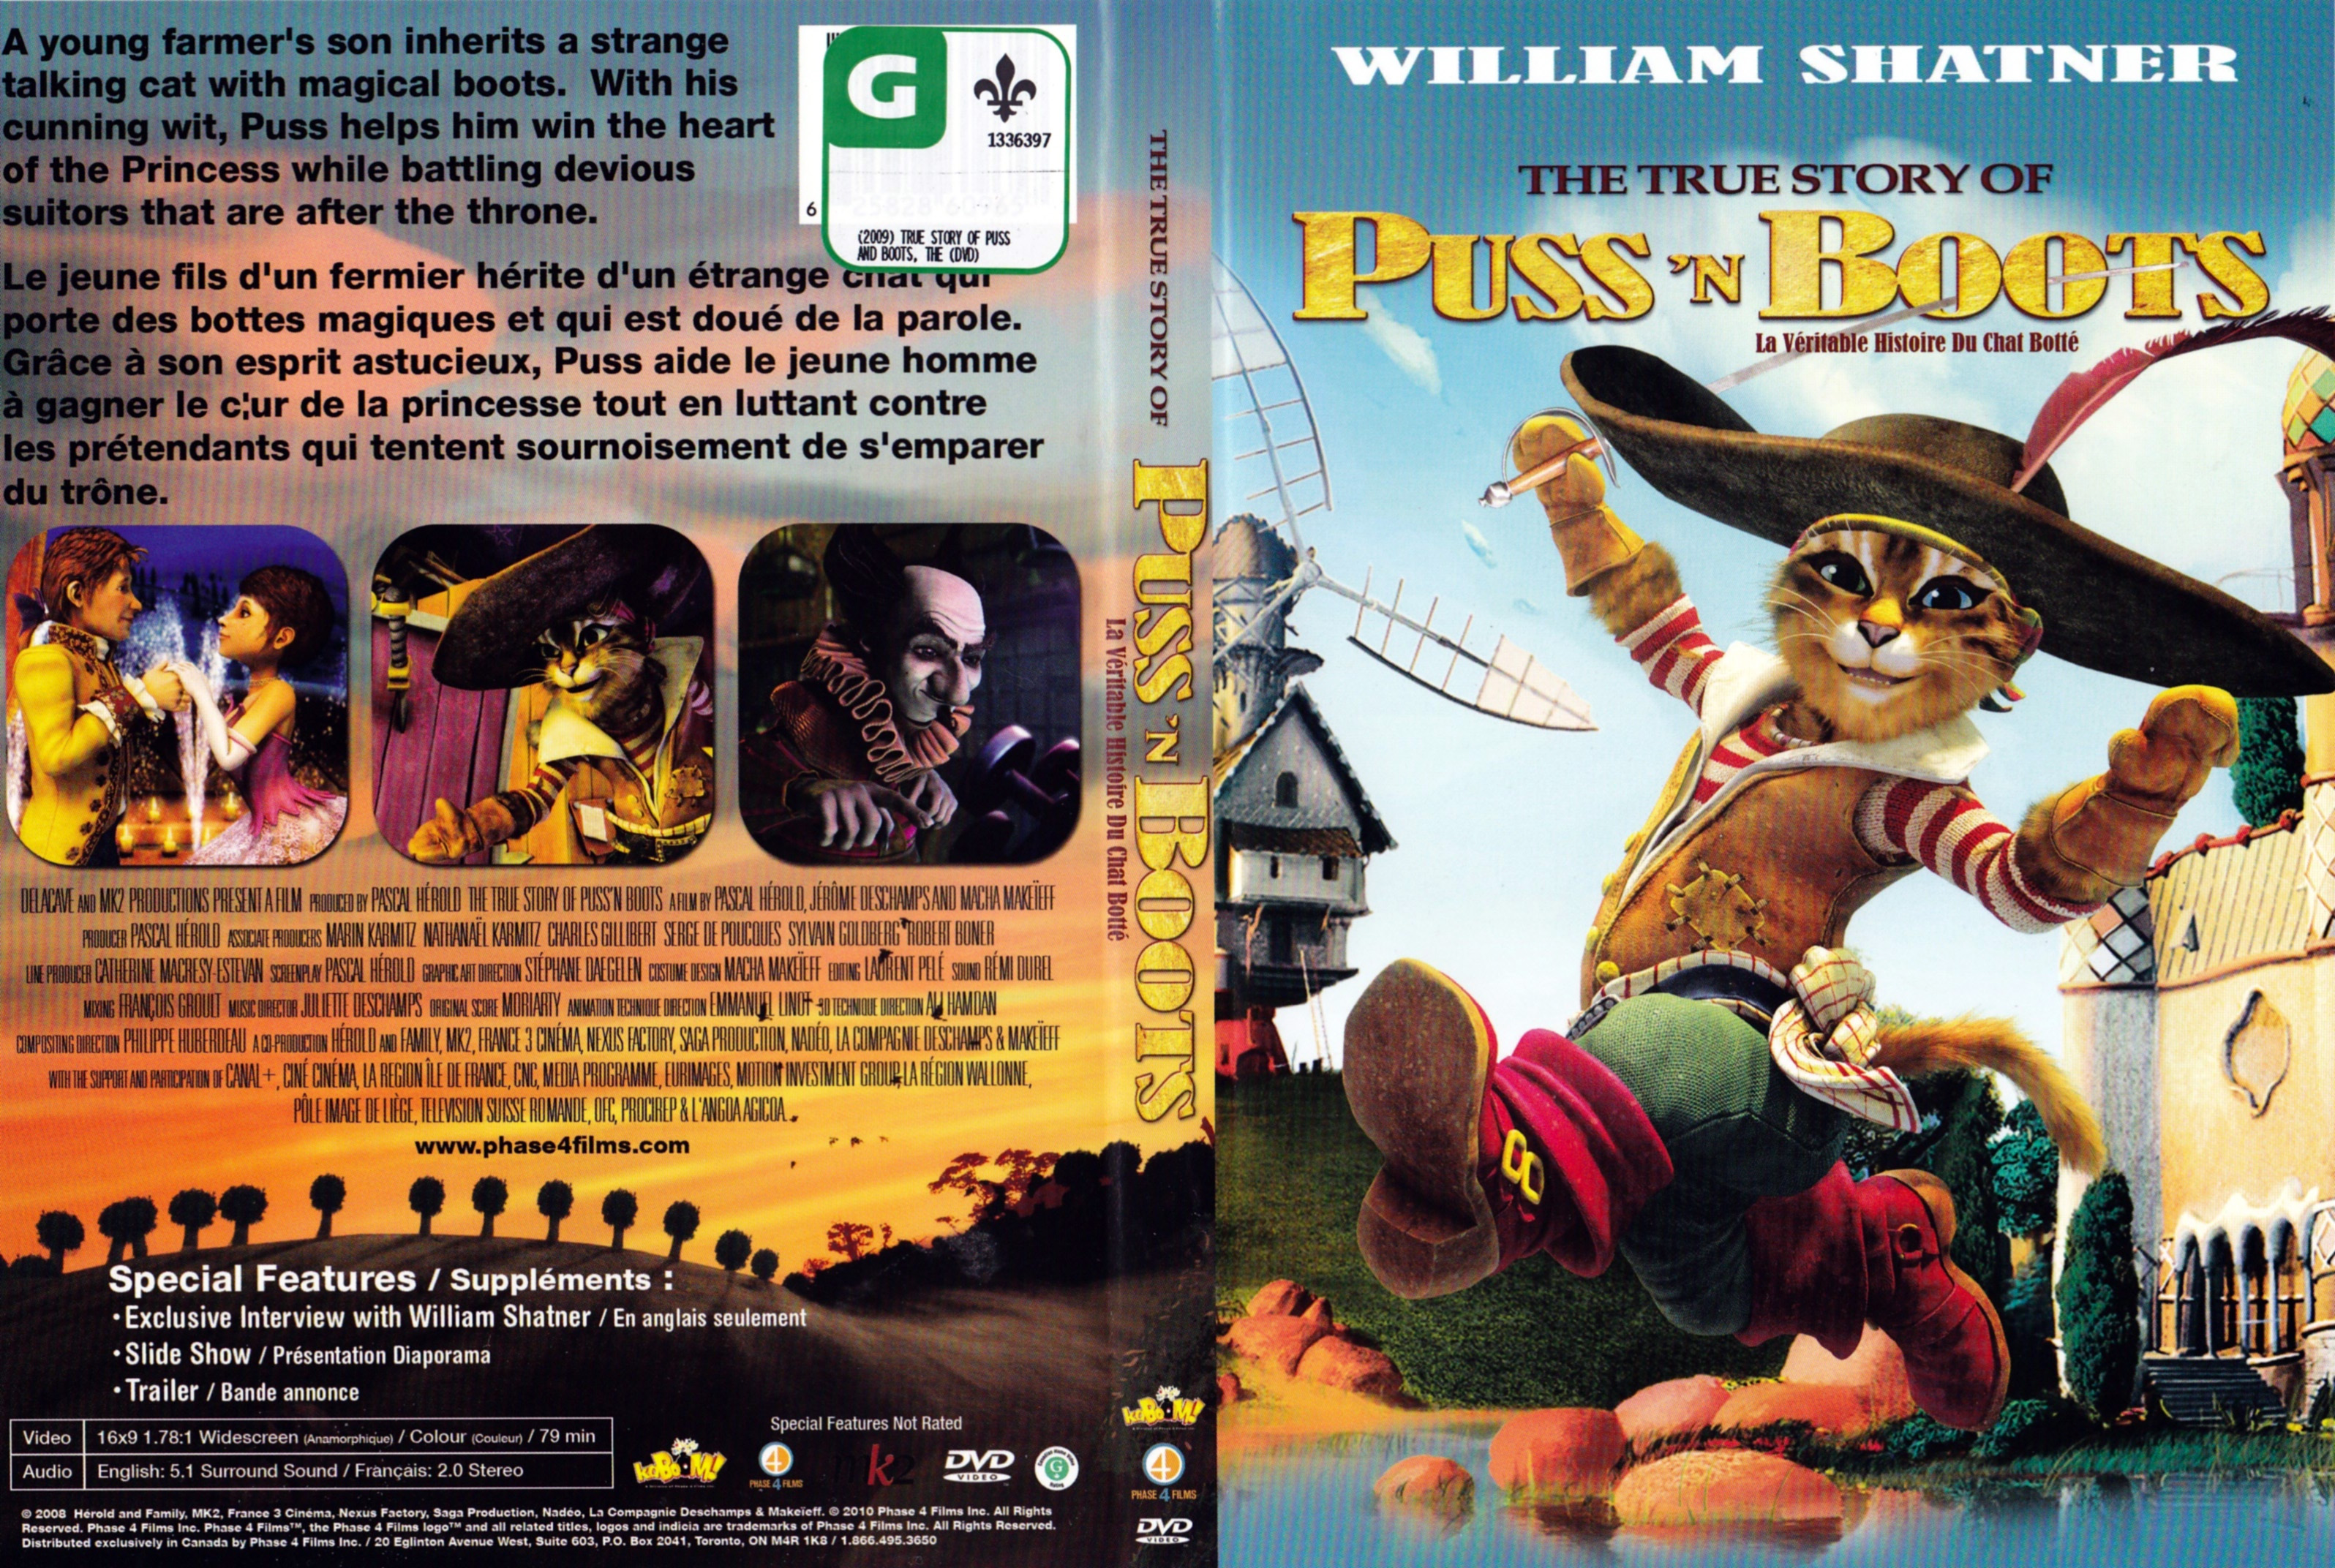 Jaquette DVD La vritable aventure du chat bott - The true story of Puss